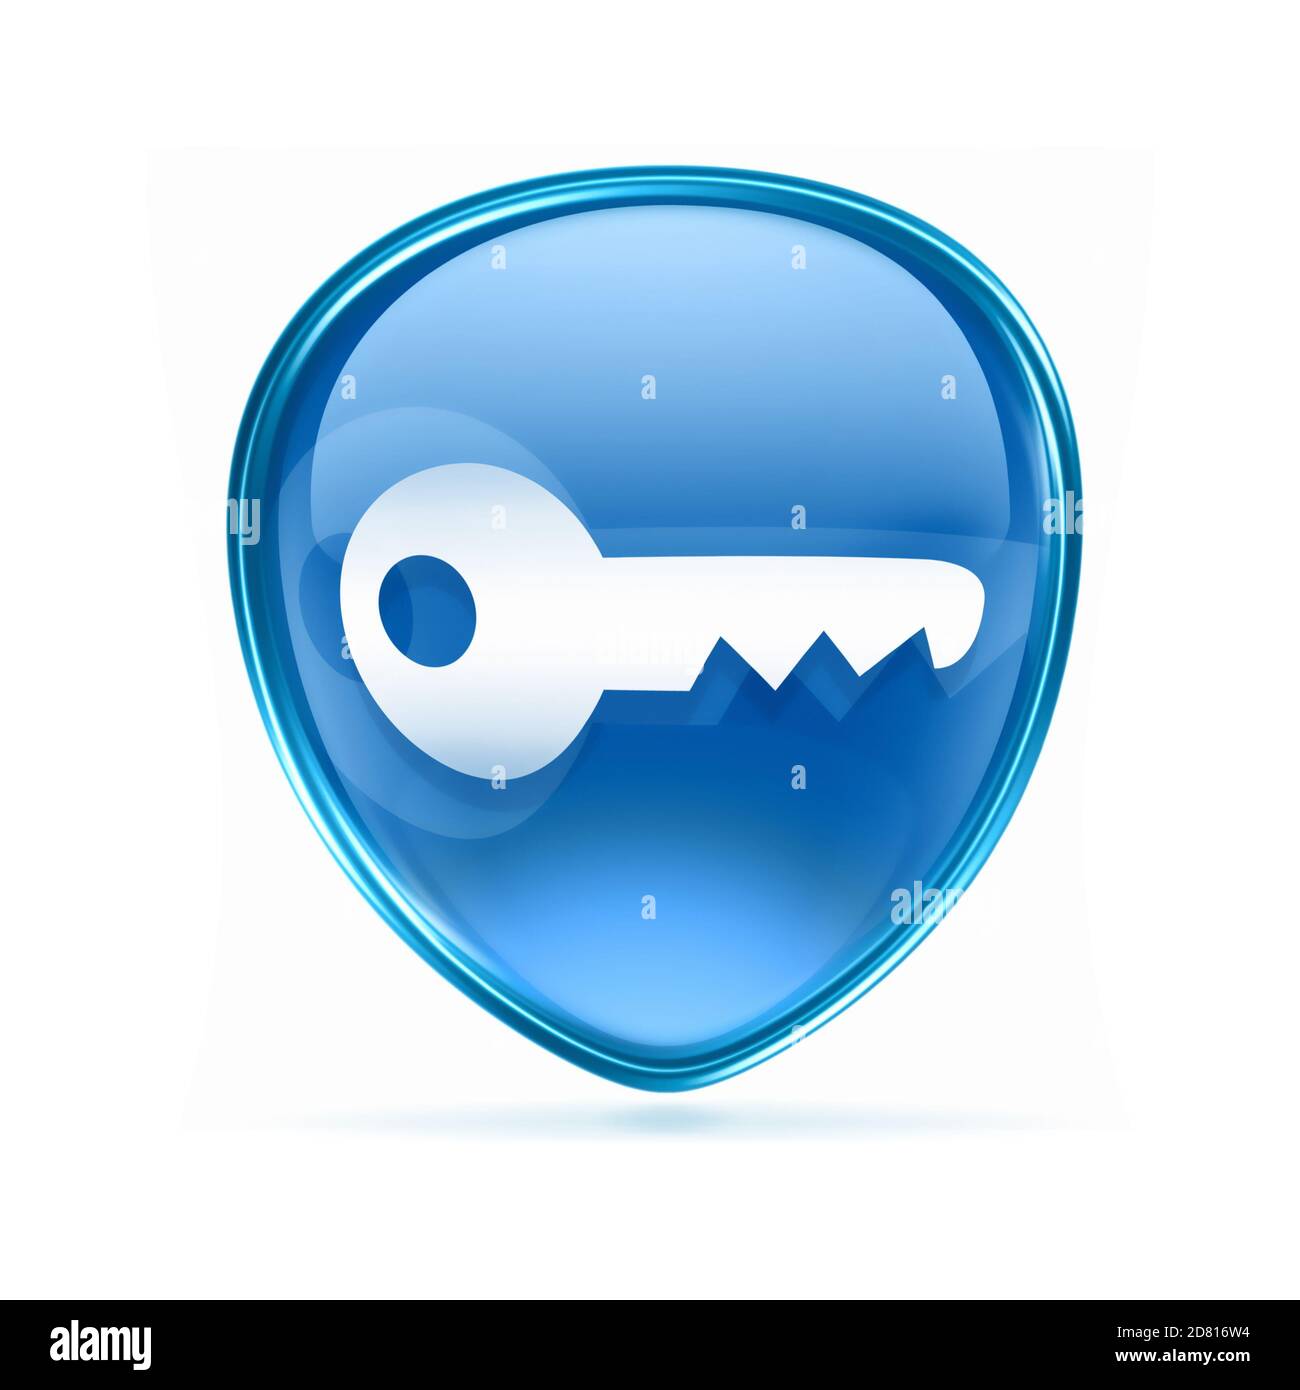 Key icon blue, isolated on white background Stock Photo